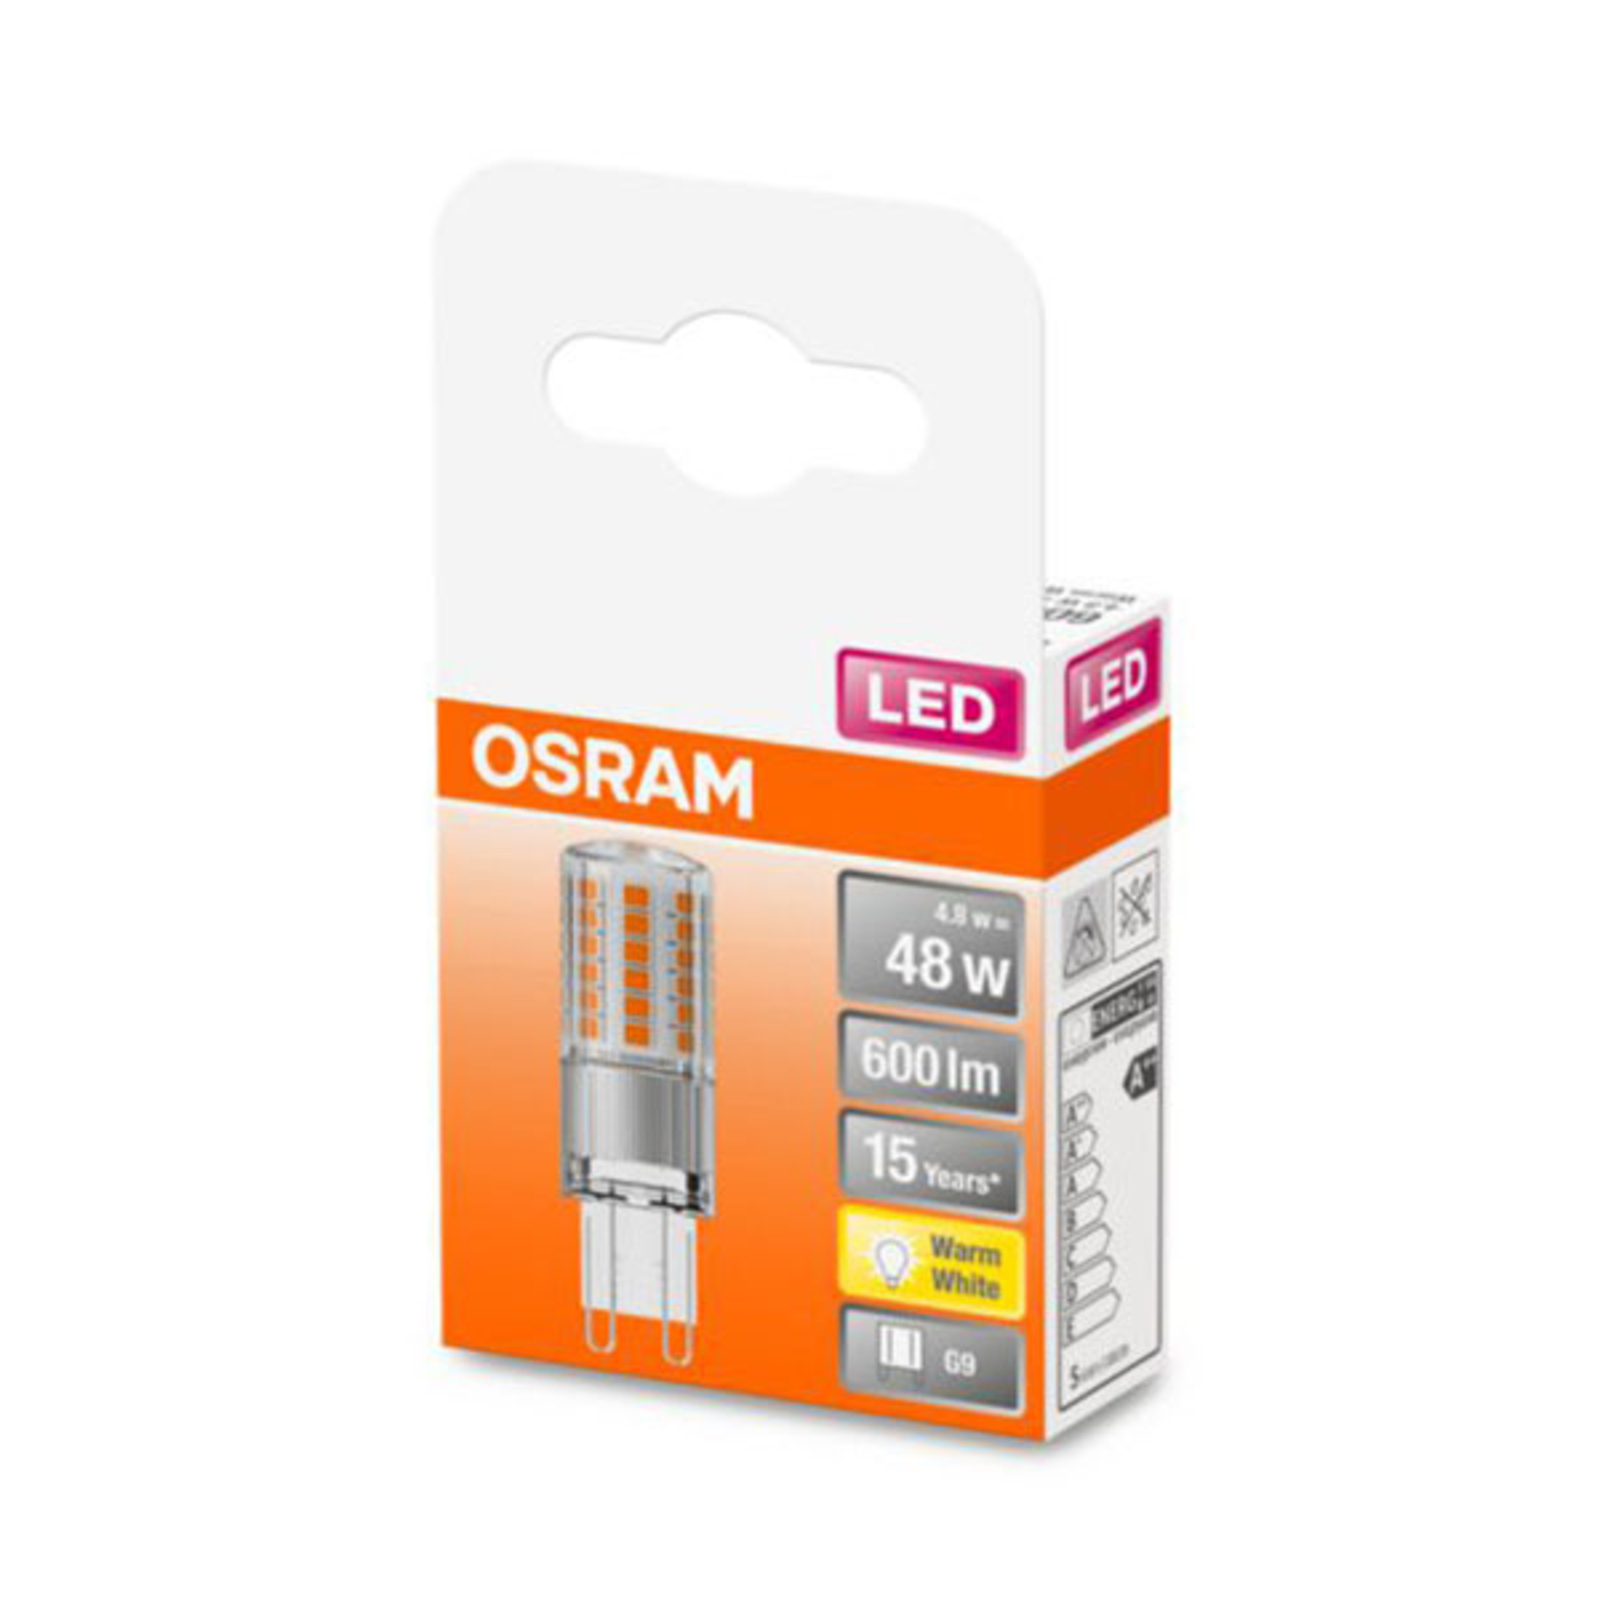 OSRAM bombilla LED bi-pin G9 4,8W 2.700K claro